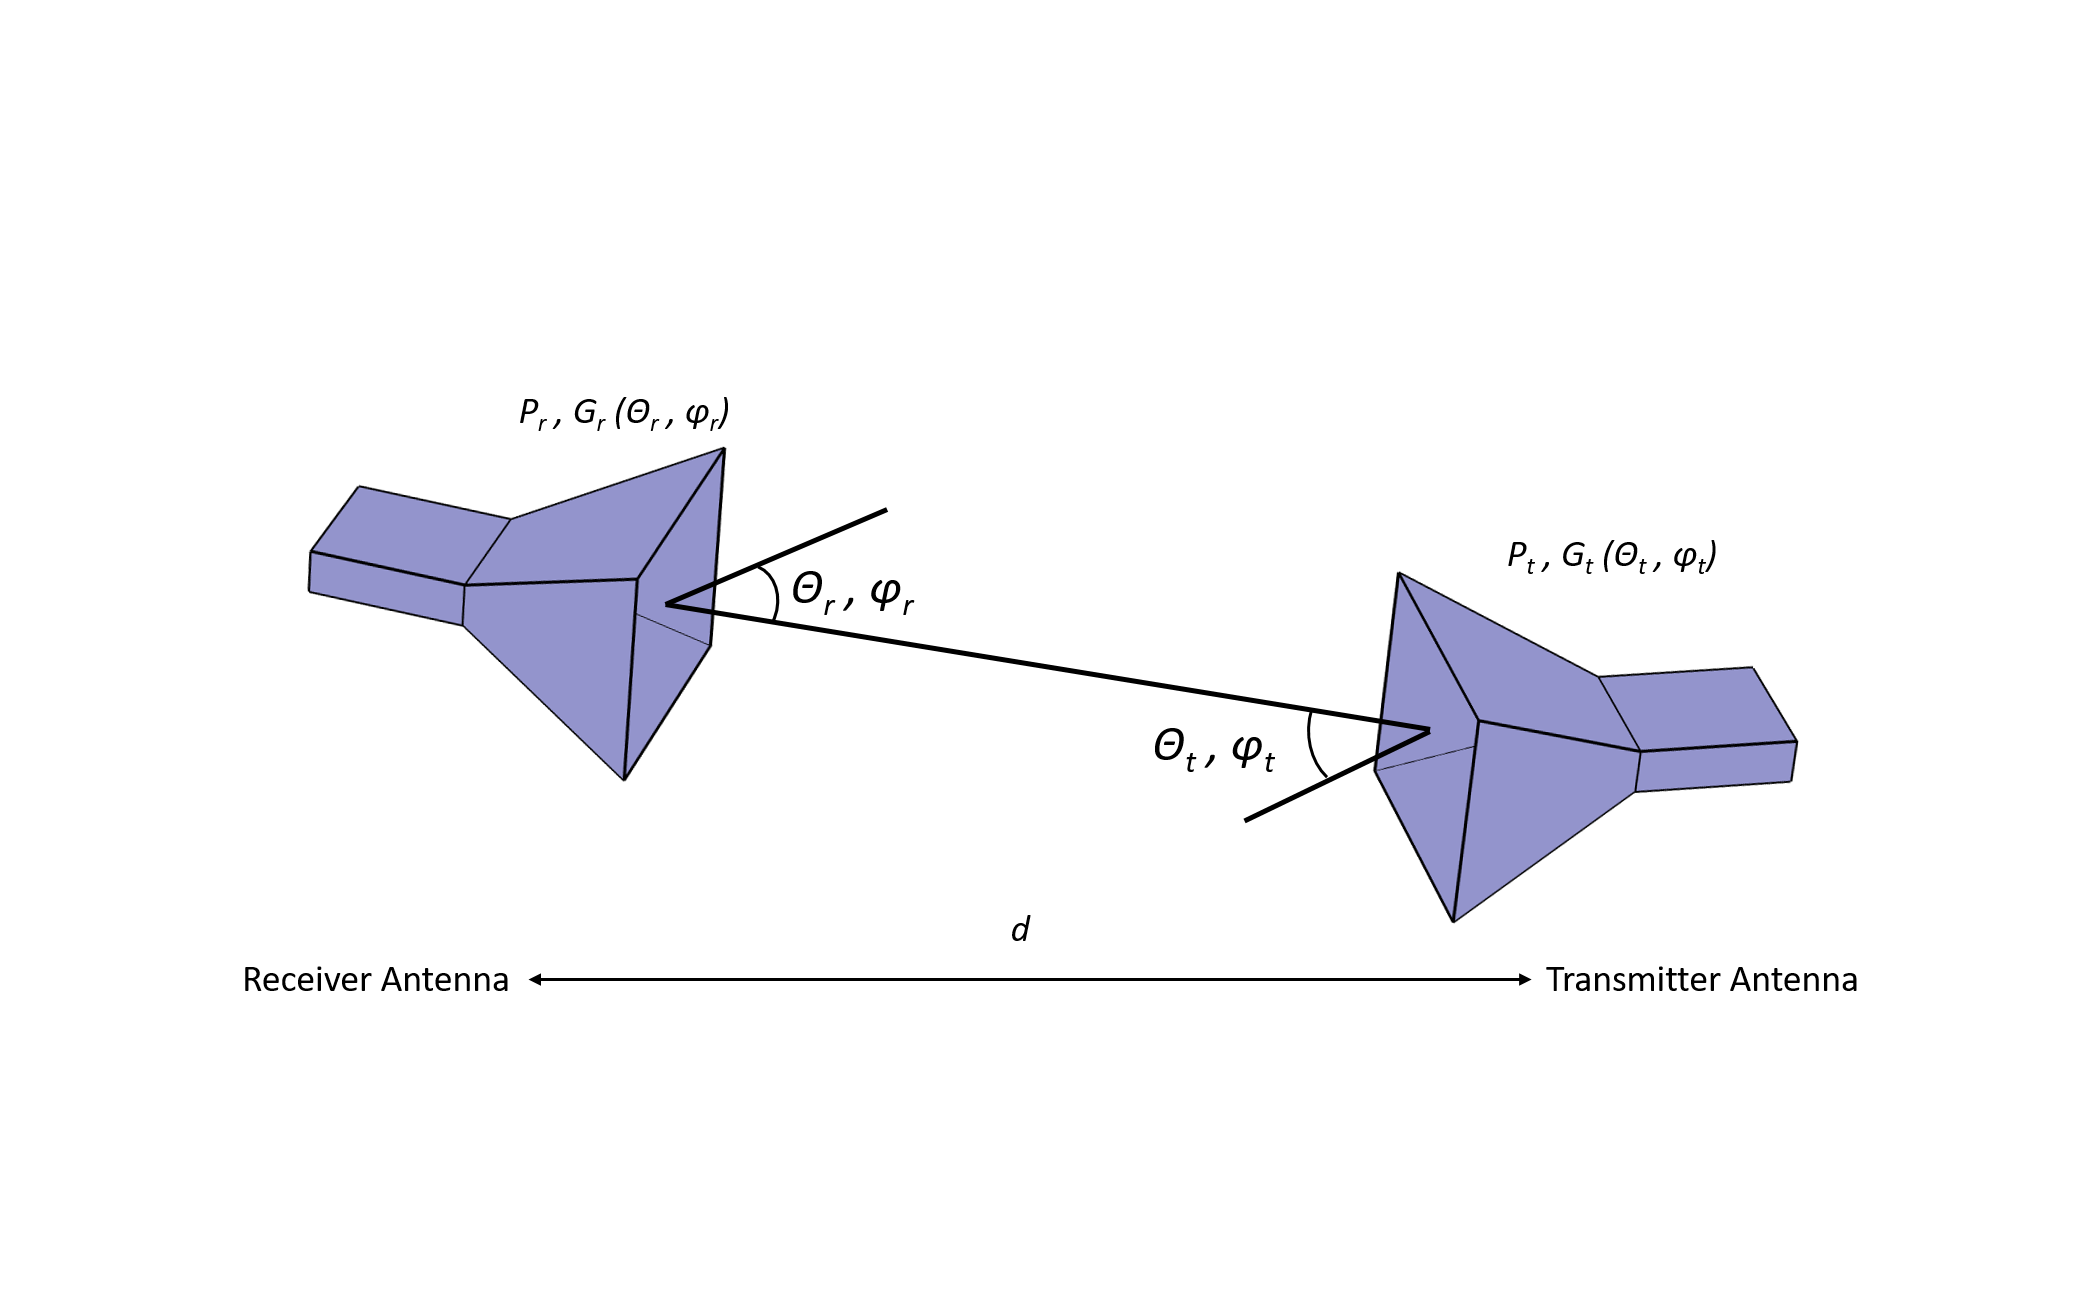 接收器天线和发射器天线的图示，描述了典型的光通信链接路径。